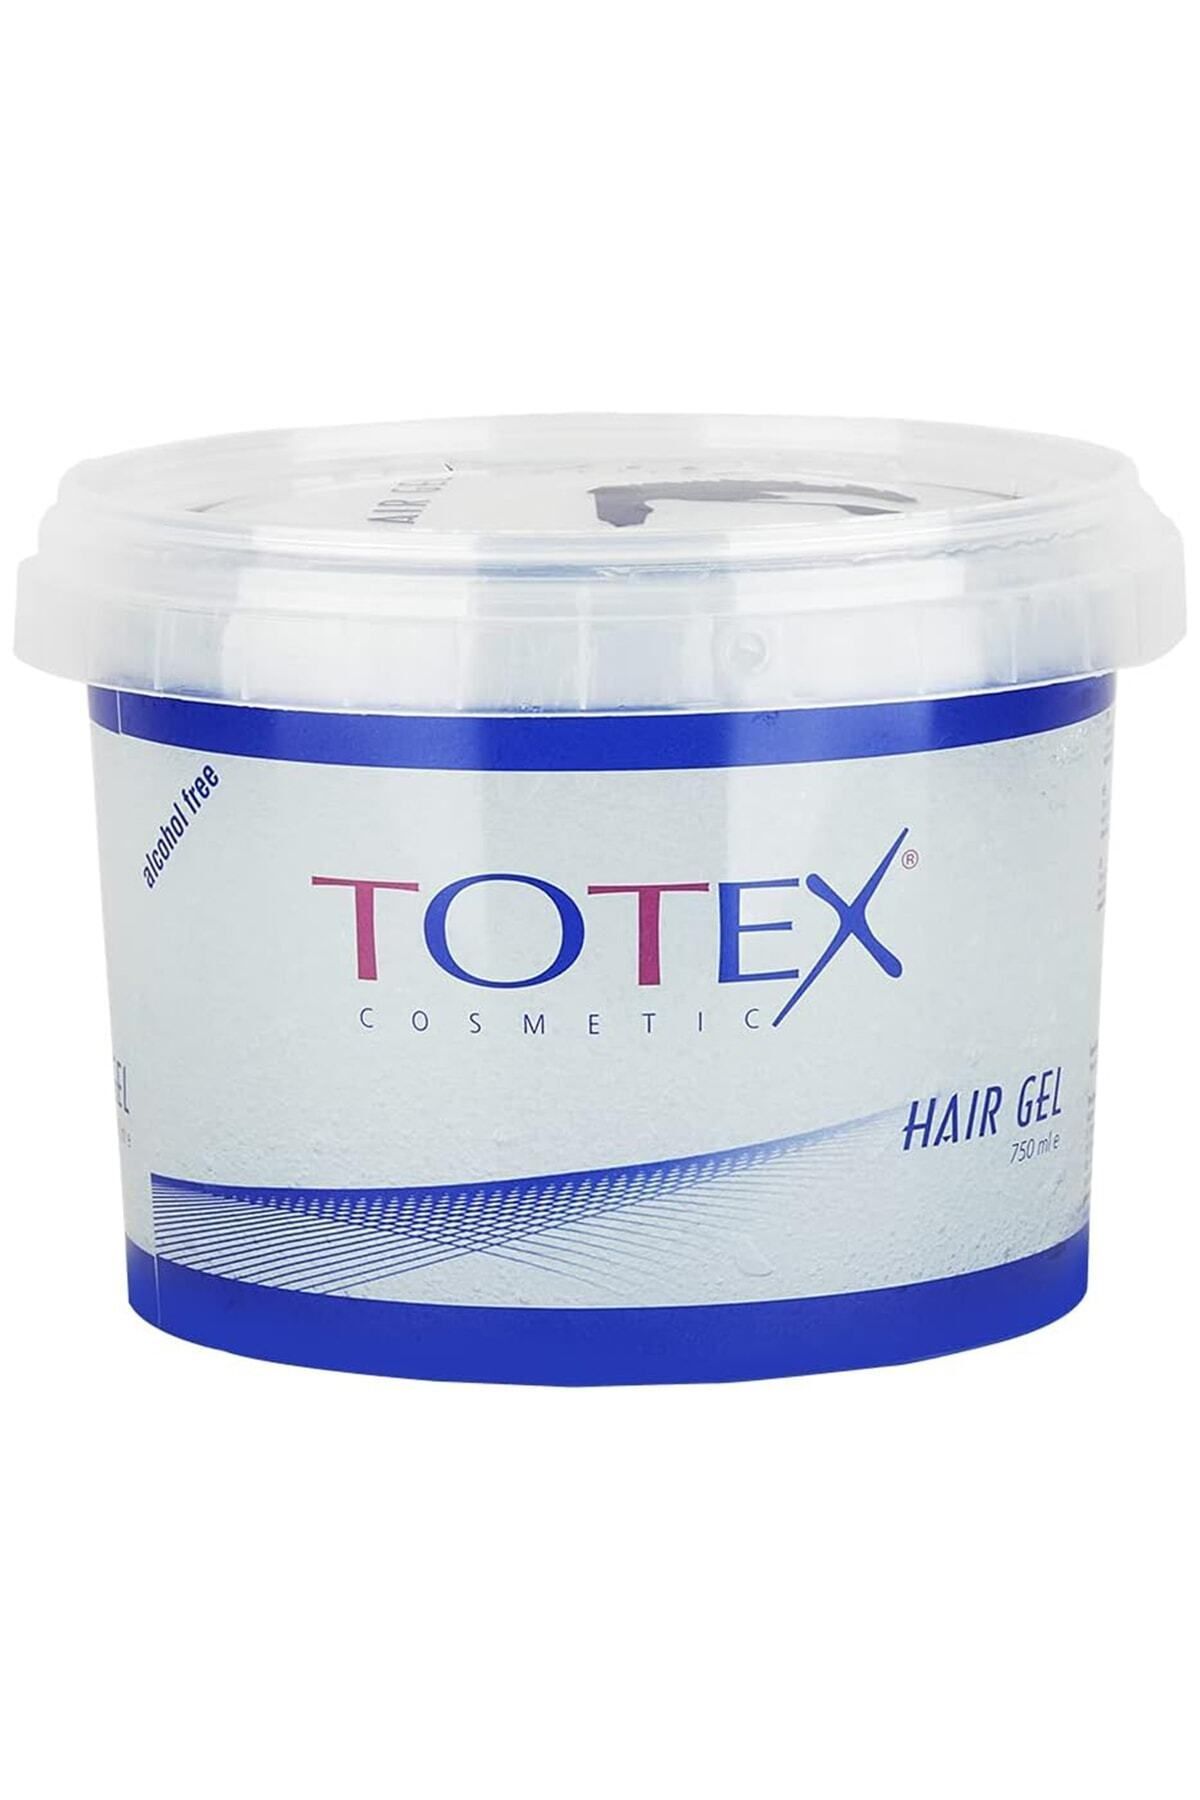 TOTEX Saç Şekillendirici Jöle | Islak Görünüm & Sert Saç Jölesi | Extra Strong 750 ml